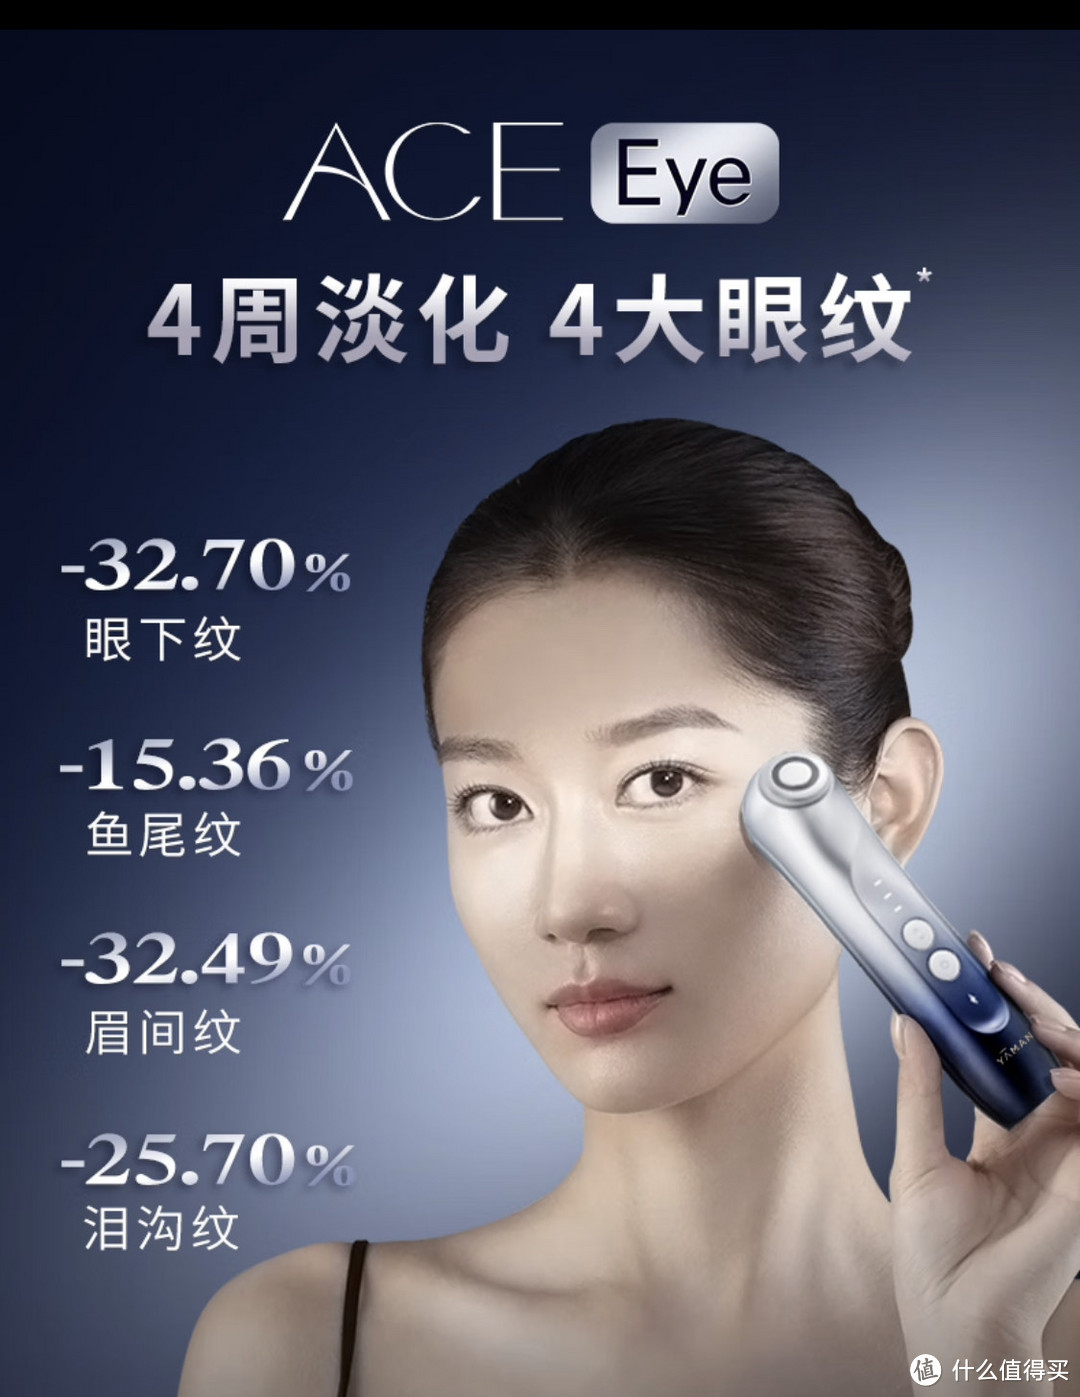 双十一错过了好价，双十二目标买一台雅萌ACE Eye眼部射频仪！